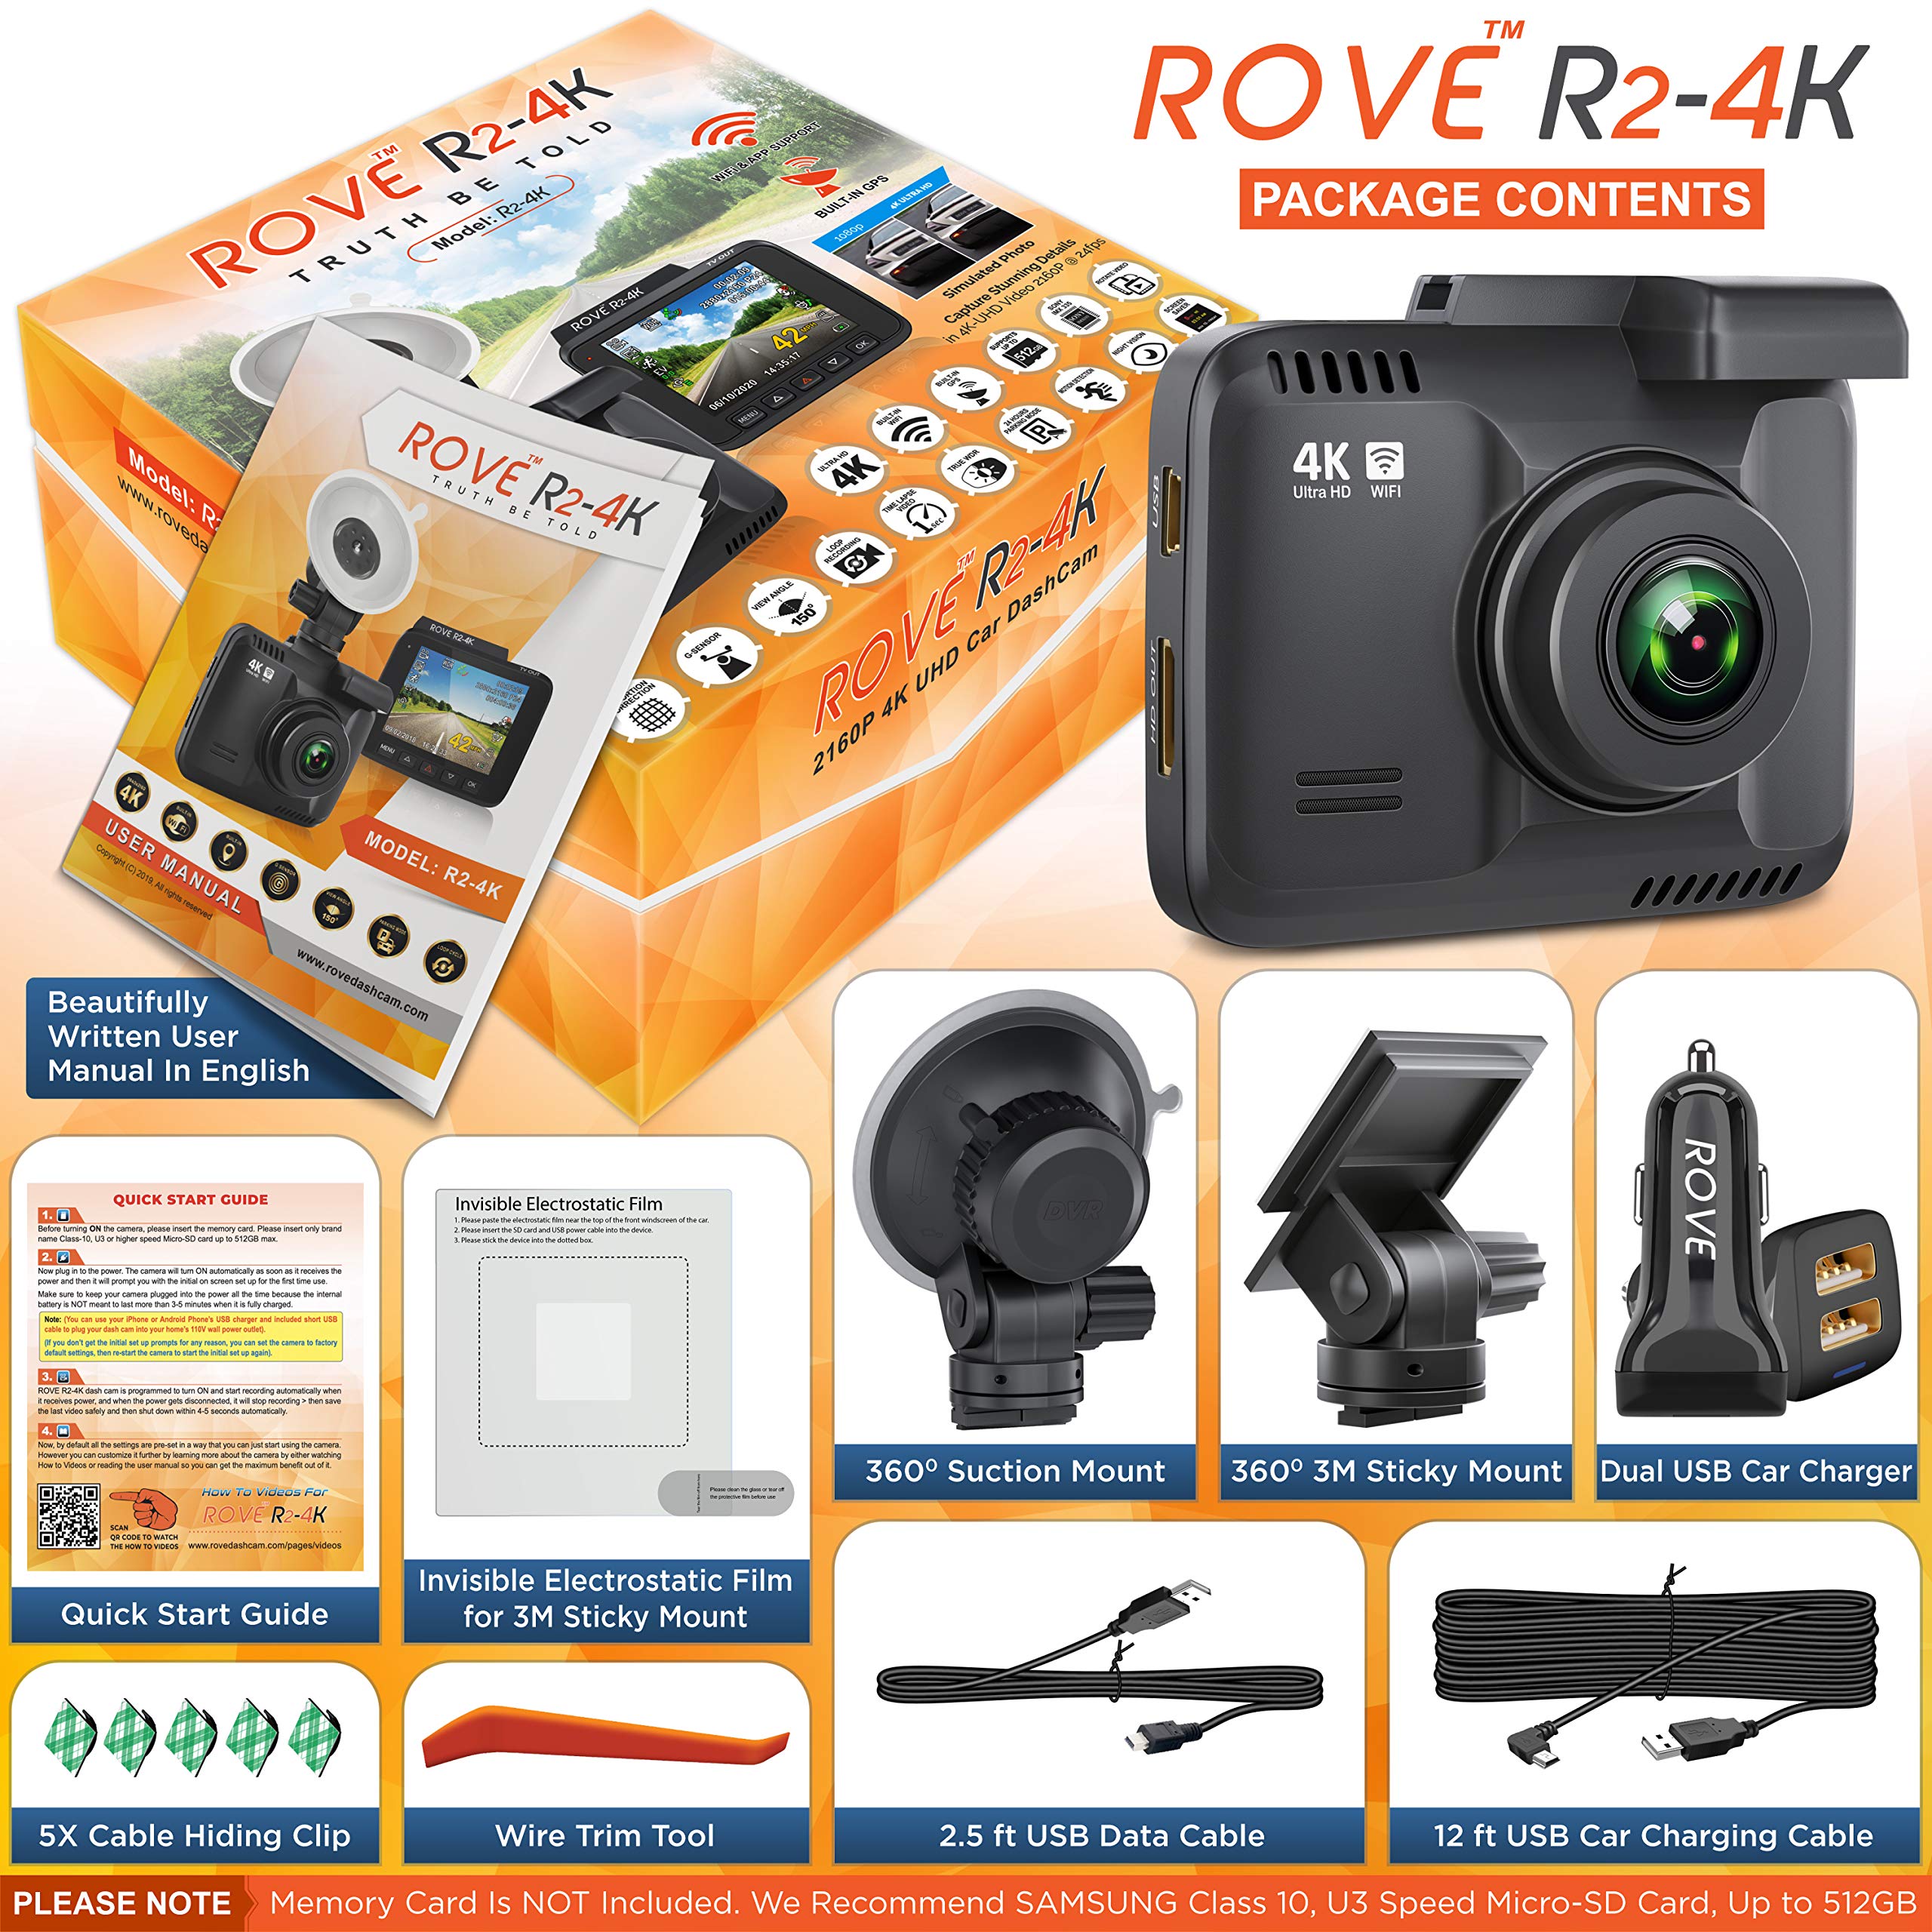 ROVE R2-4K Dash Cam | 128GB Micro SD Card